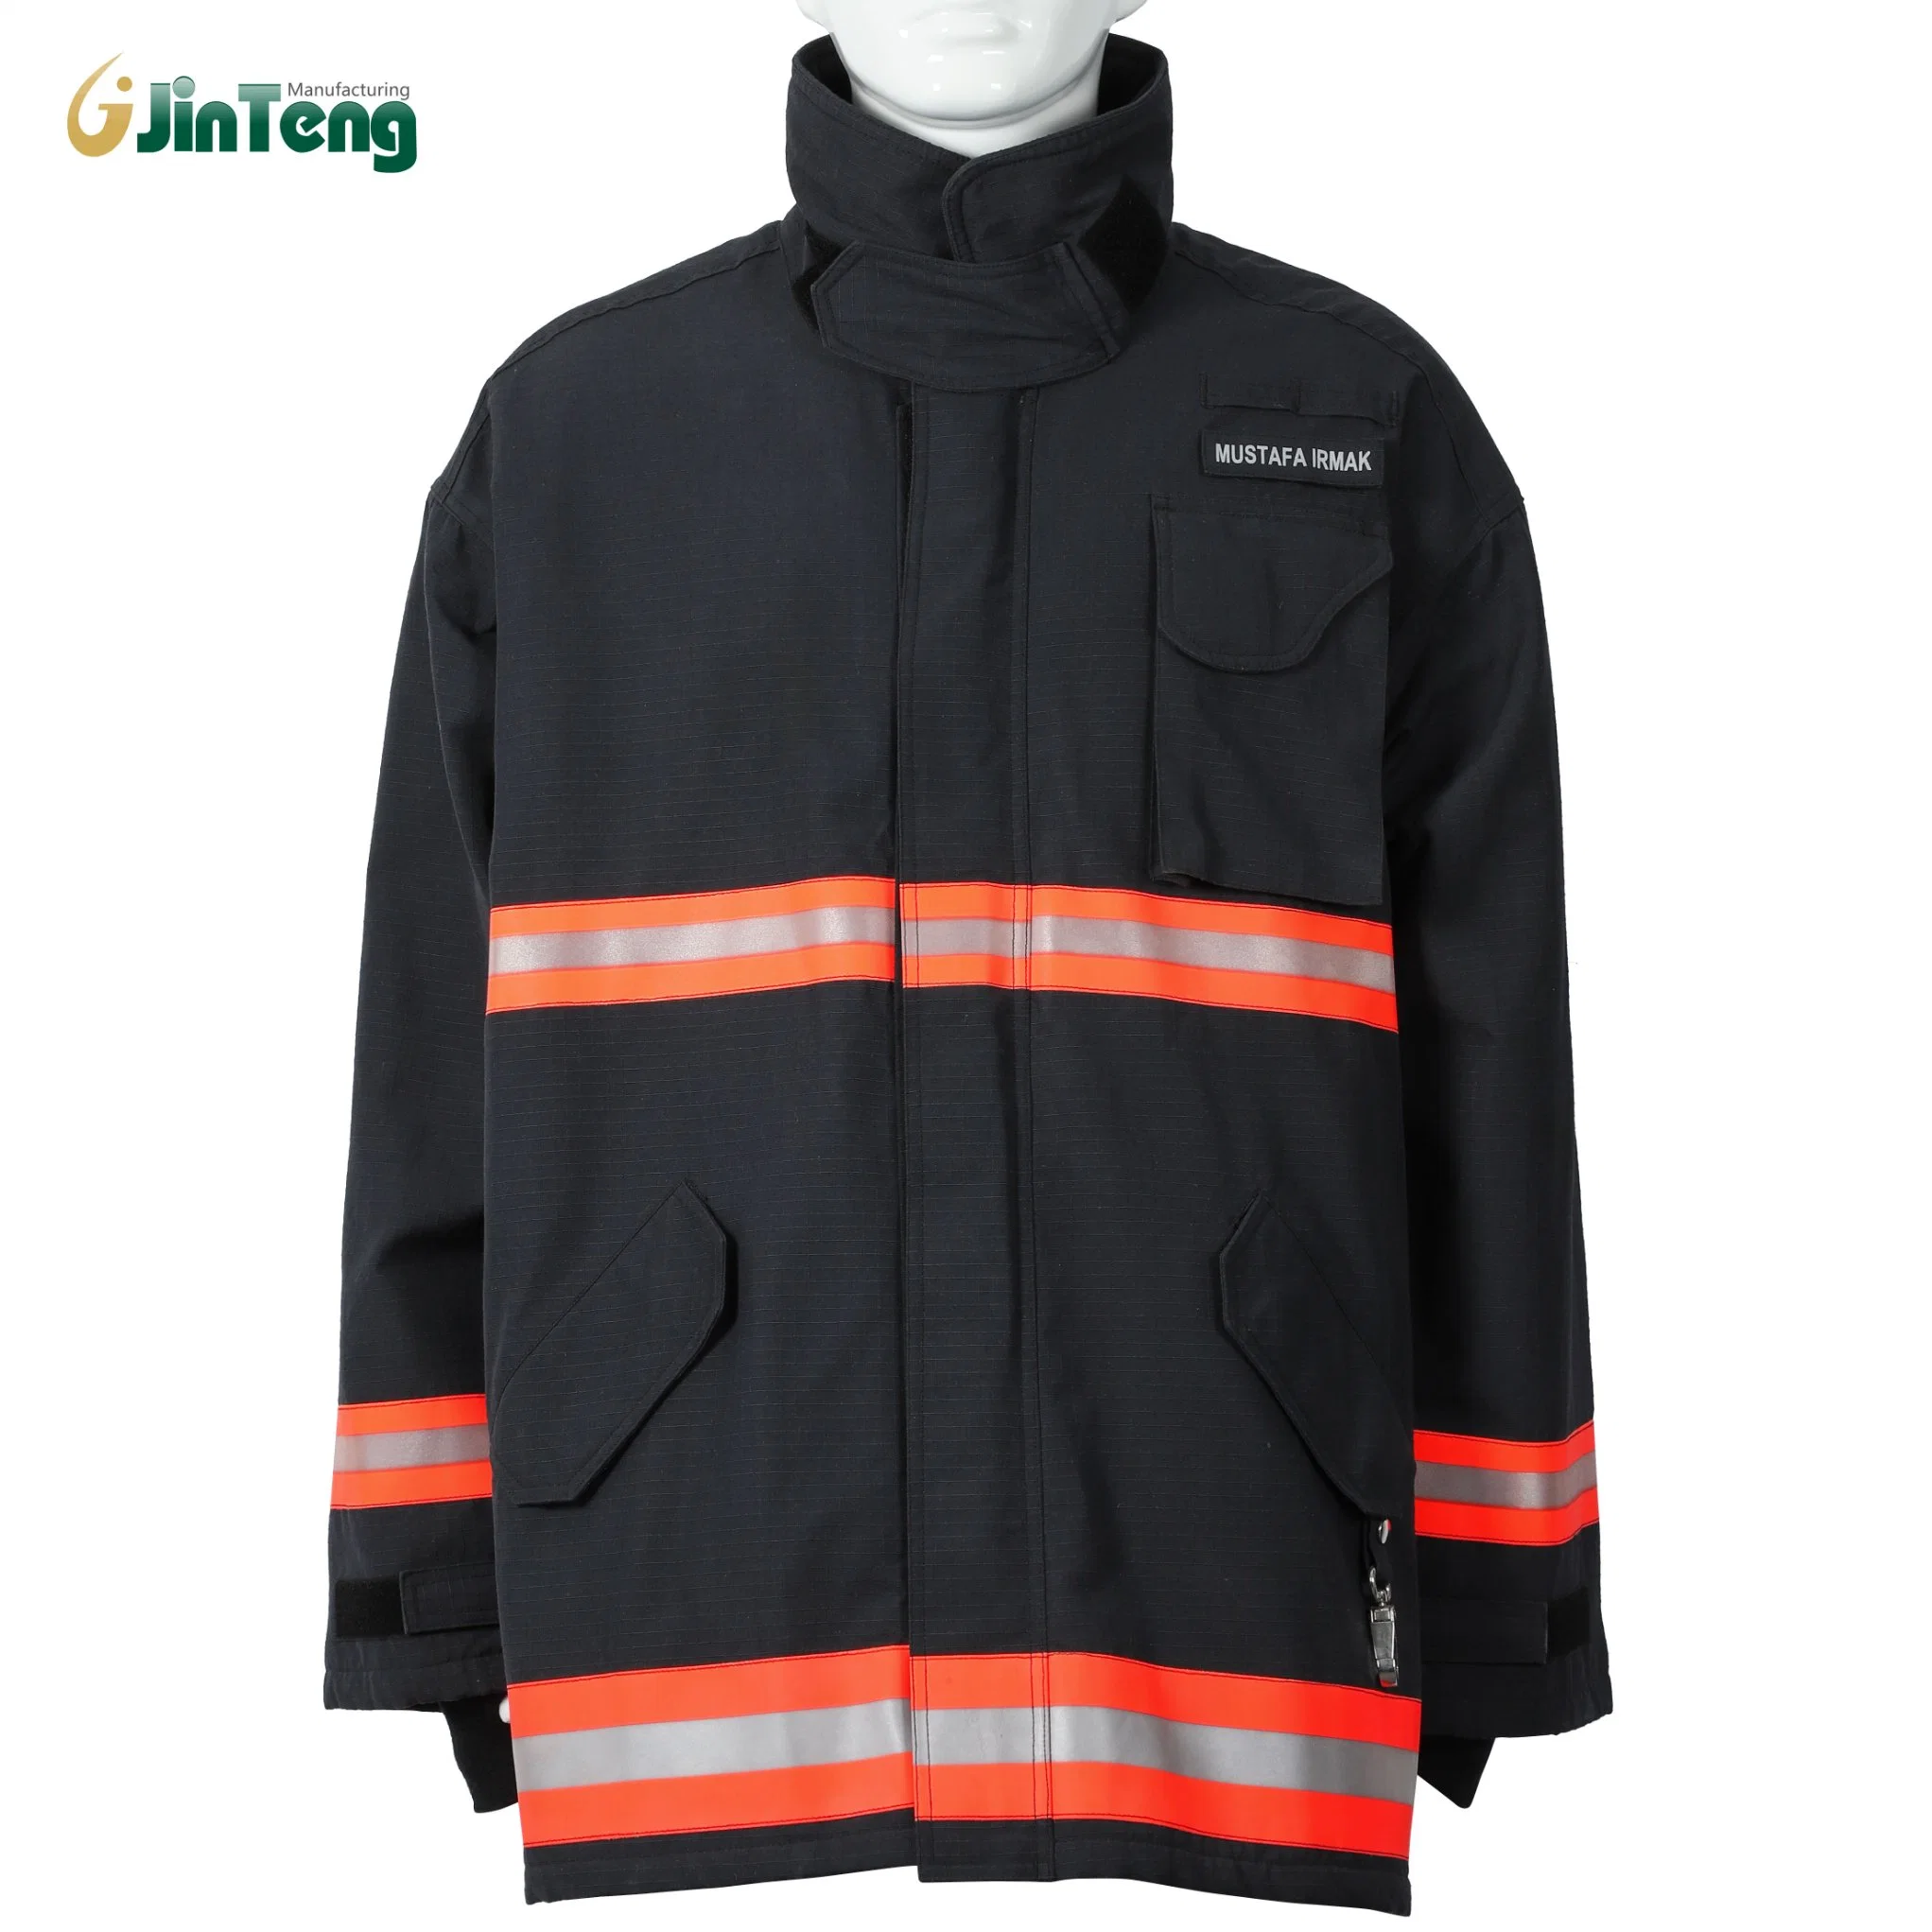 Ropa uniforme Construcción ropa de trabajo ropa de alta calidad mejor Venta barata Uniformes de ropa de trabajo